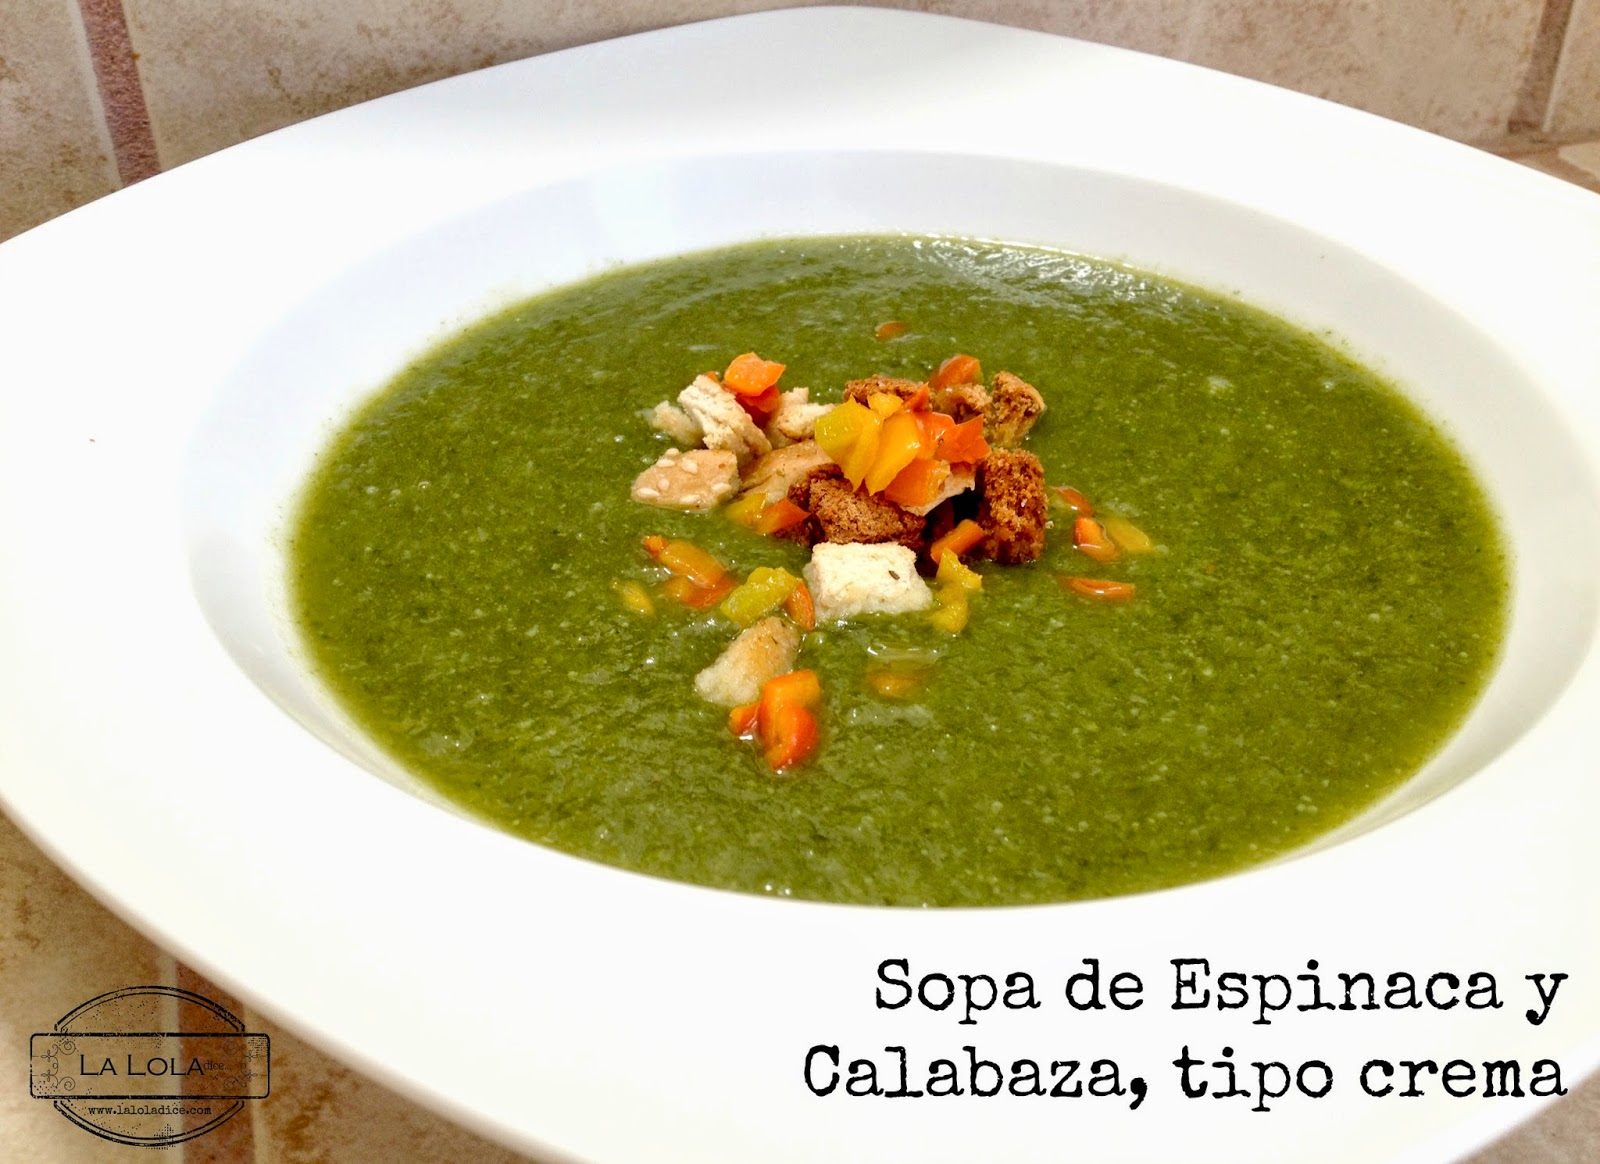 Sopa De Espinacas Y Calabaza, Tipo Crema!
